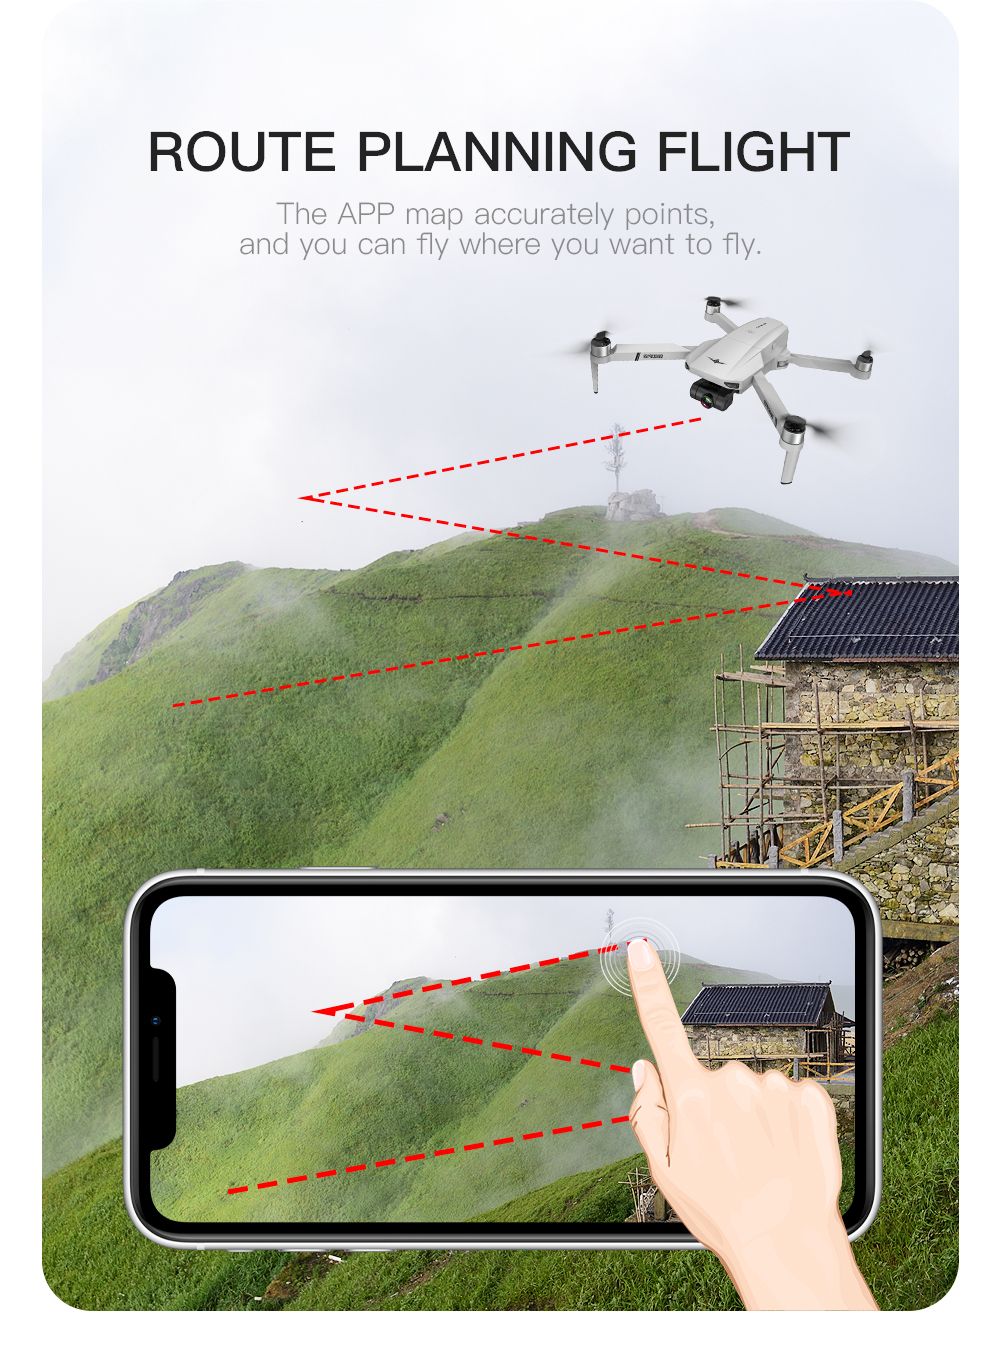 KF102 Caméra 6K GPS 5G WIFI FPV Drone RC pliable sans brosse à cardan mécanique auto-stabilisant à 2 axes - Une batterie